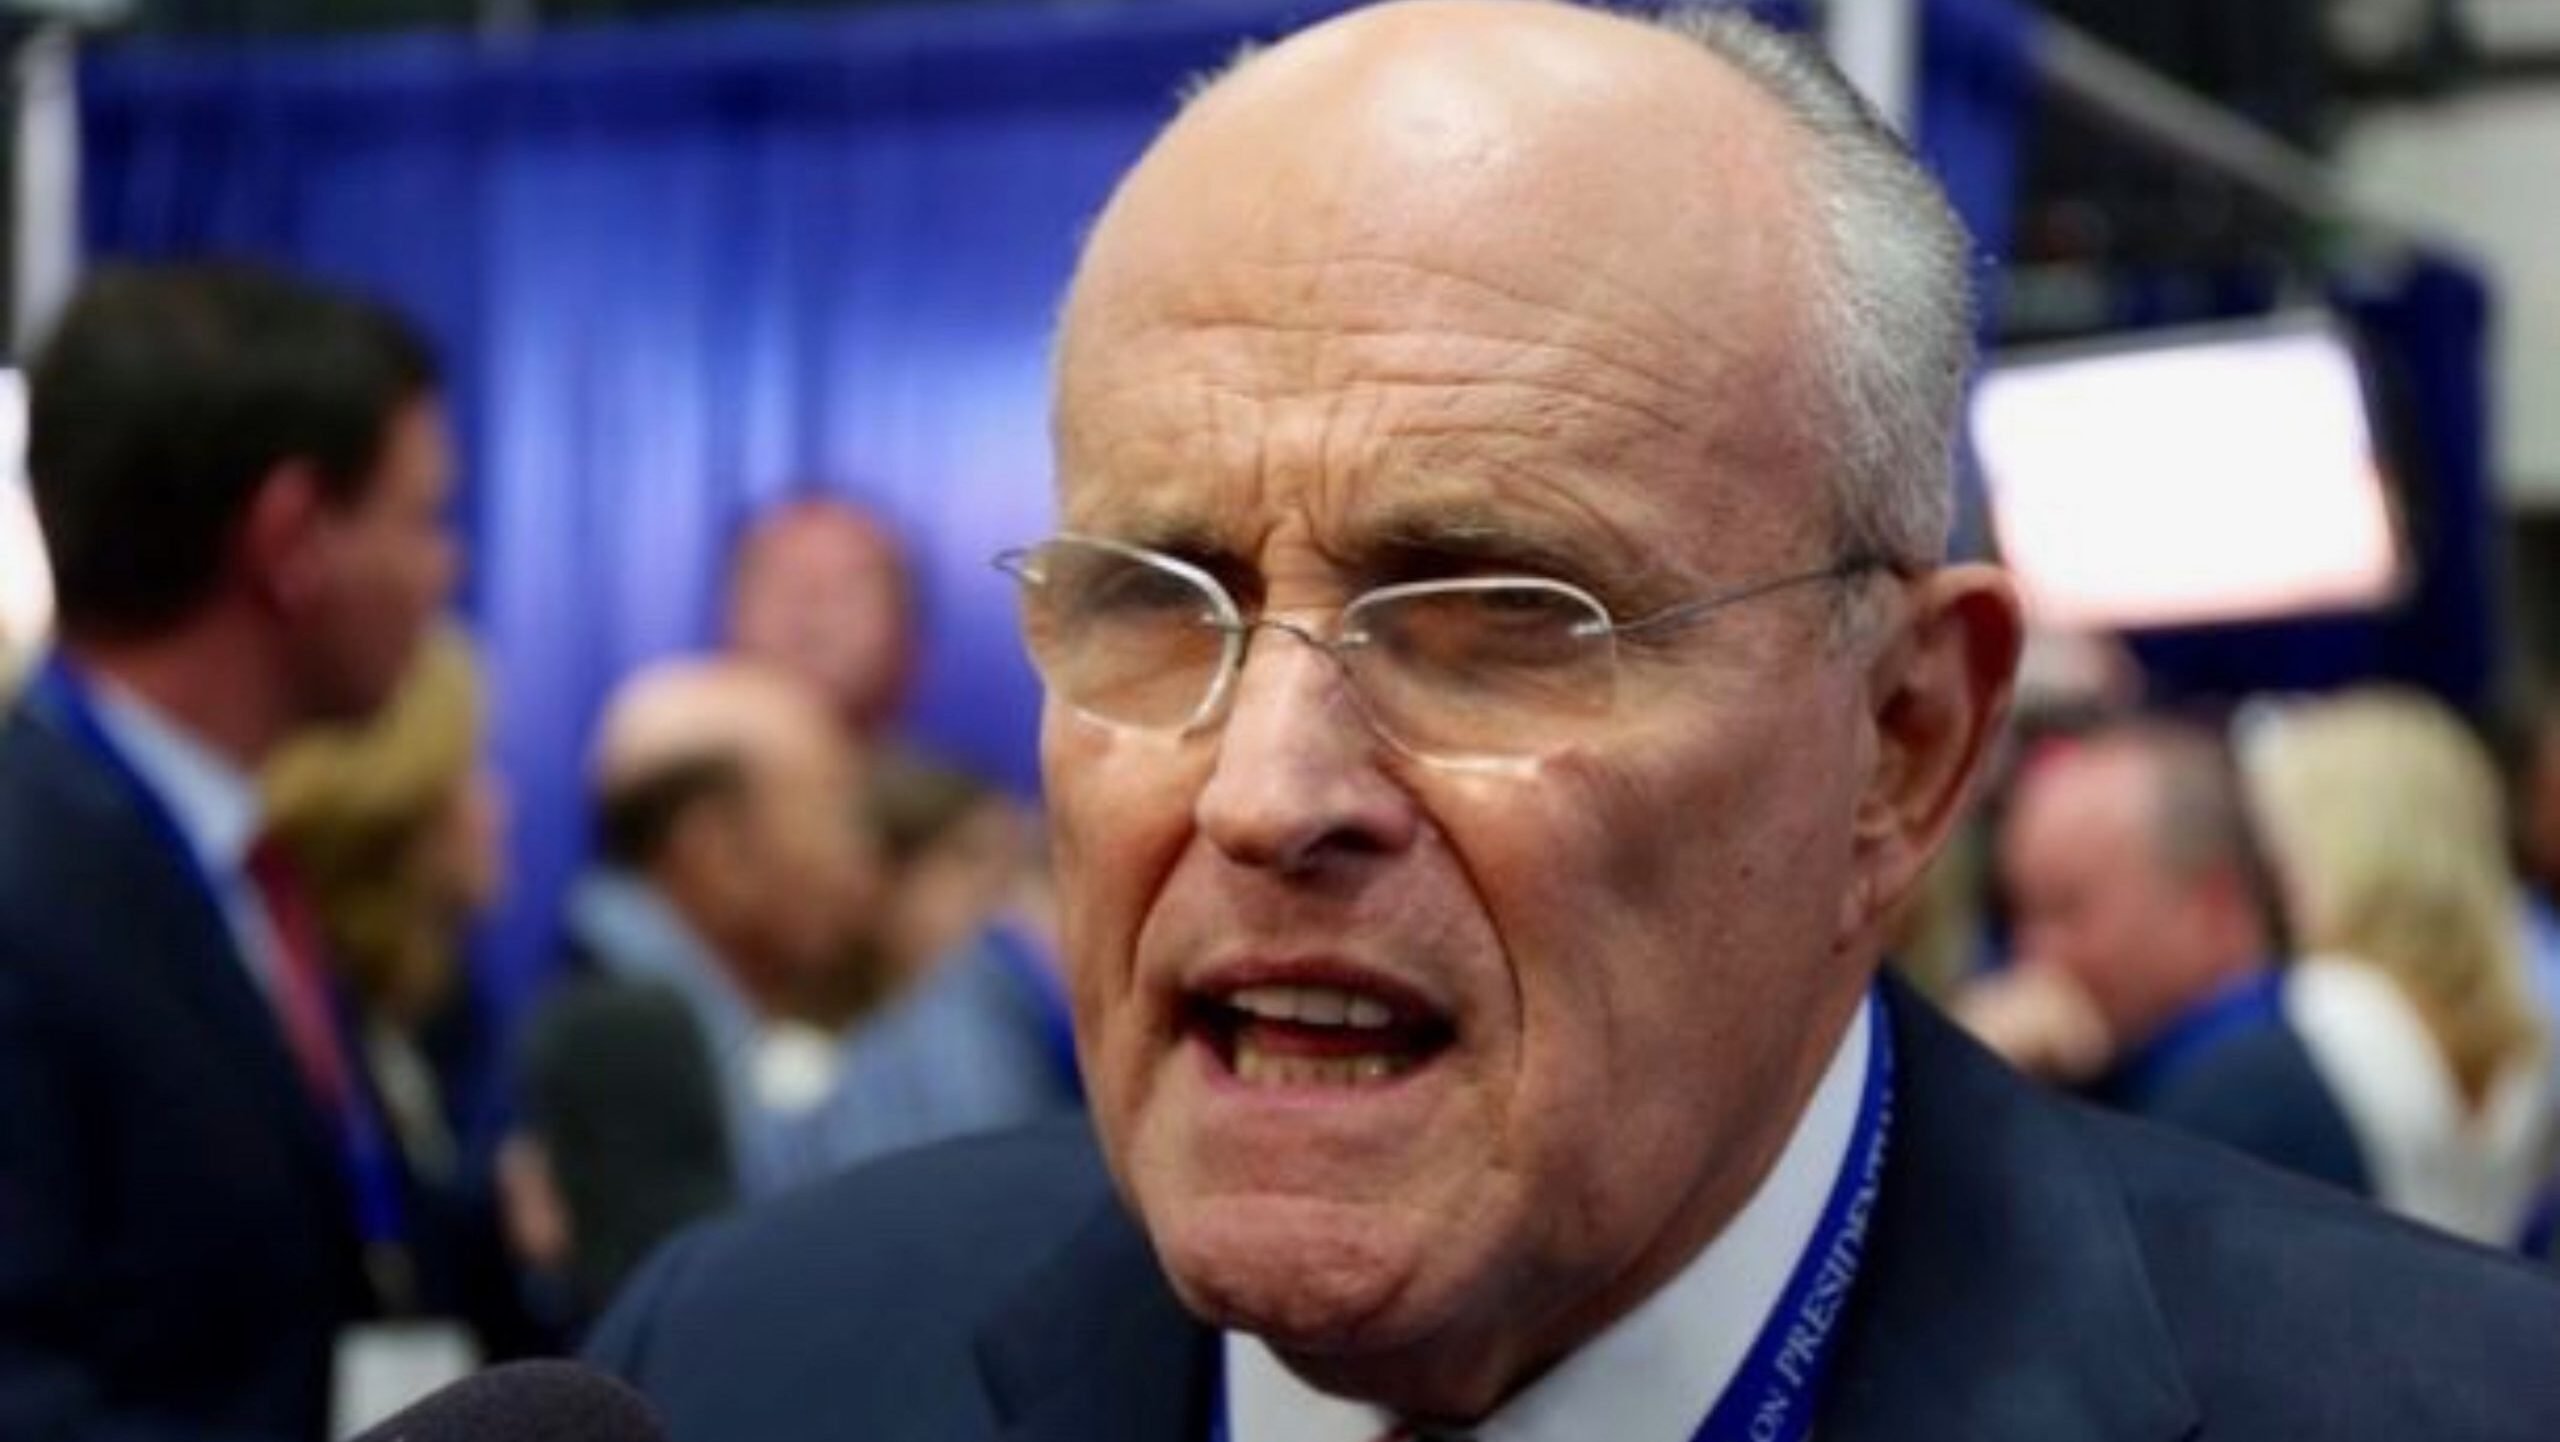  Rudy Giuliani, fostul avocat al lui Donald Trump, a depus cerere de protecţie în caz de faliment. Are datorii de peste 100 de milioane de dolari